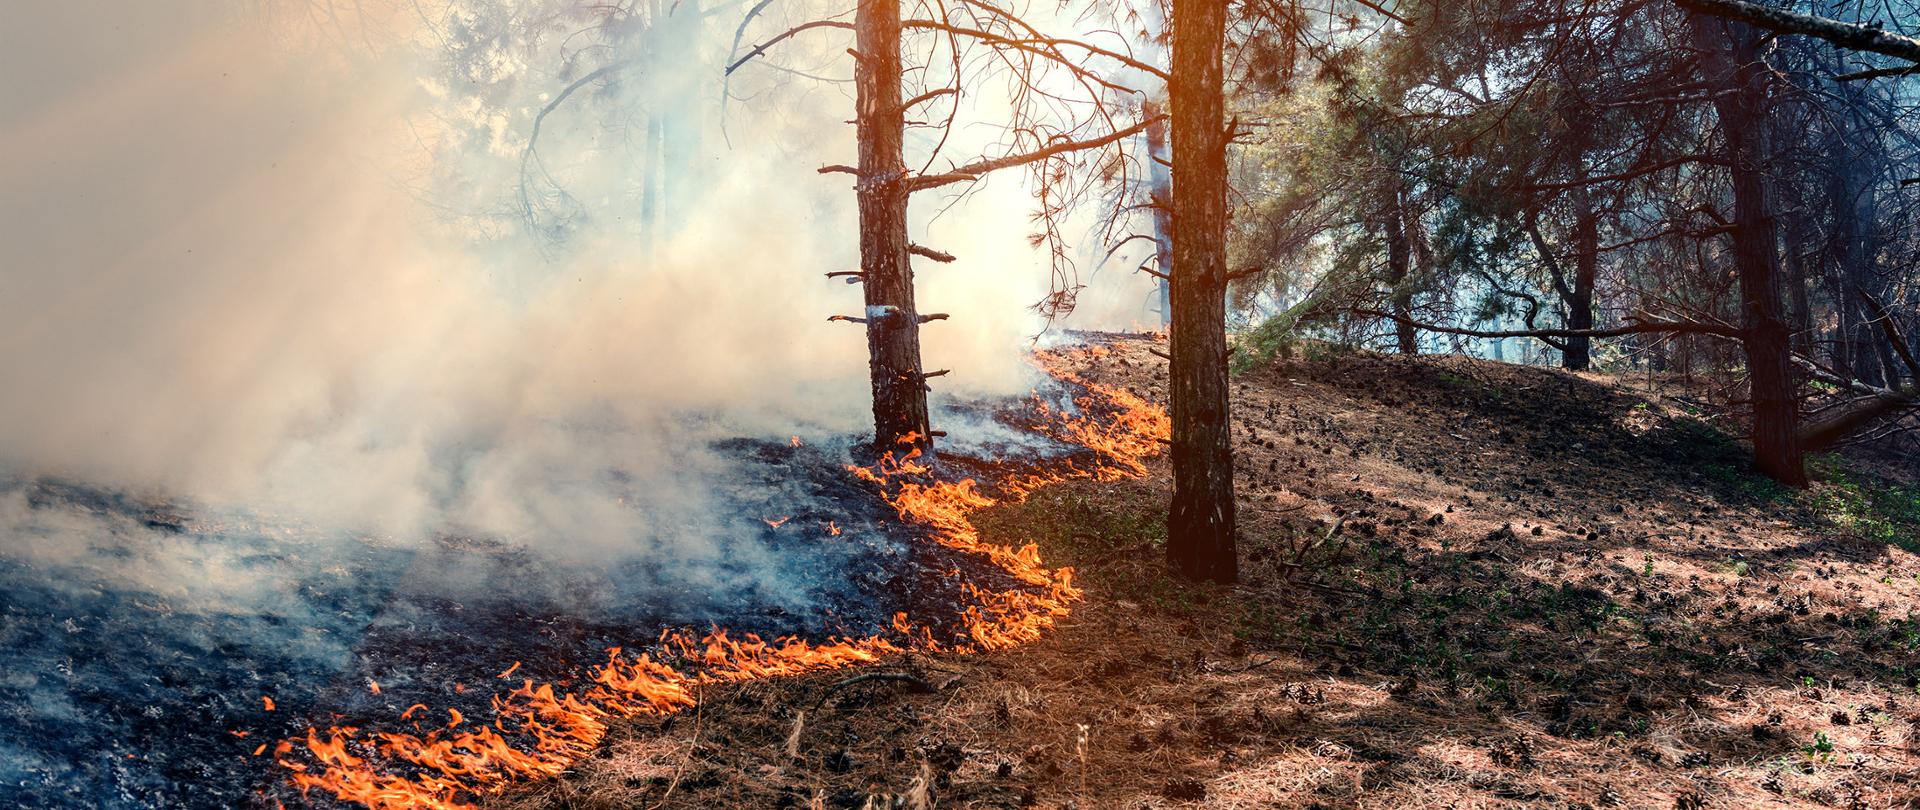 Pożar w lesie. Widać palącą się trawę wśród drzew. Jest pogodnie. W lesie duże zadymienie od palącej się trawy.